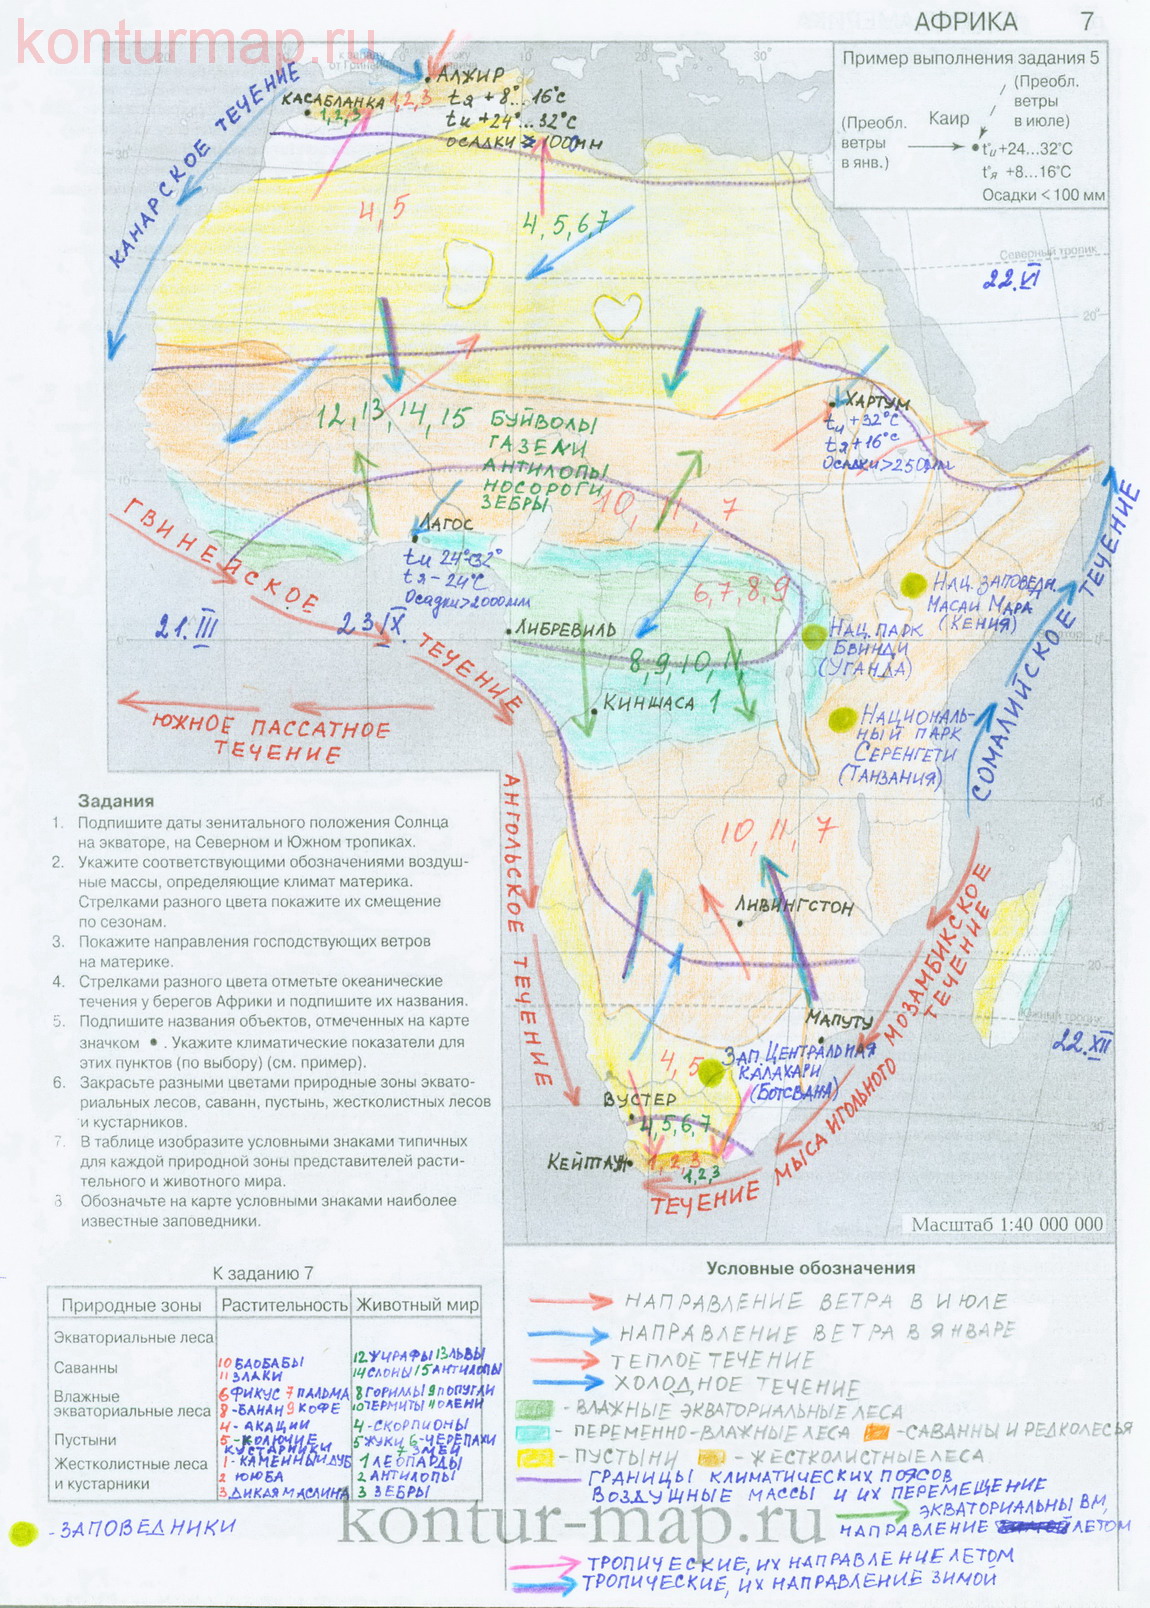 Контурная карта африки 7 класс с условными обозначениями